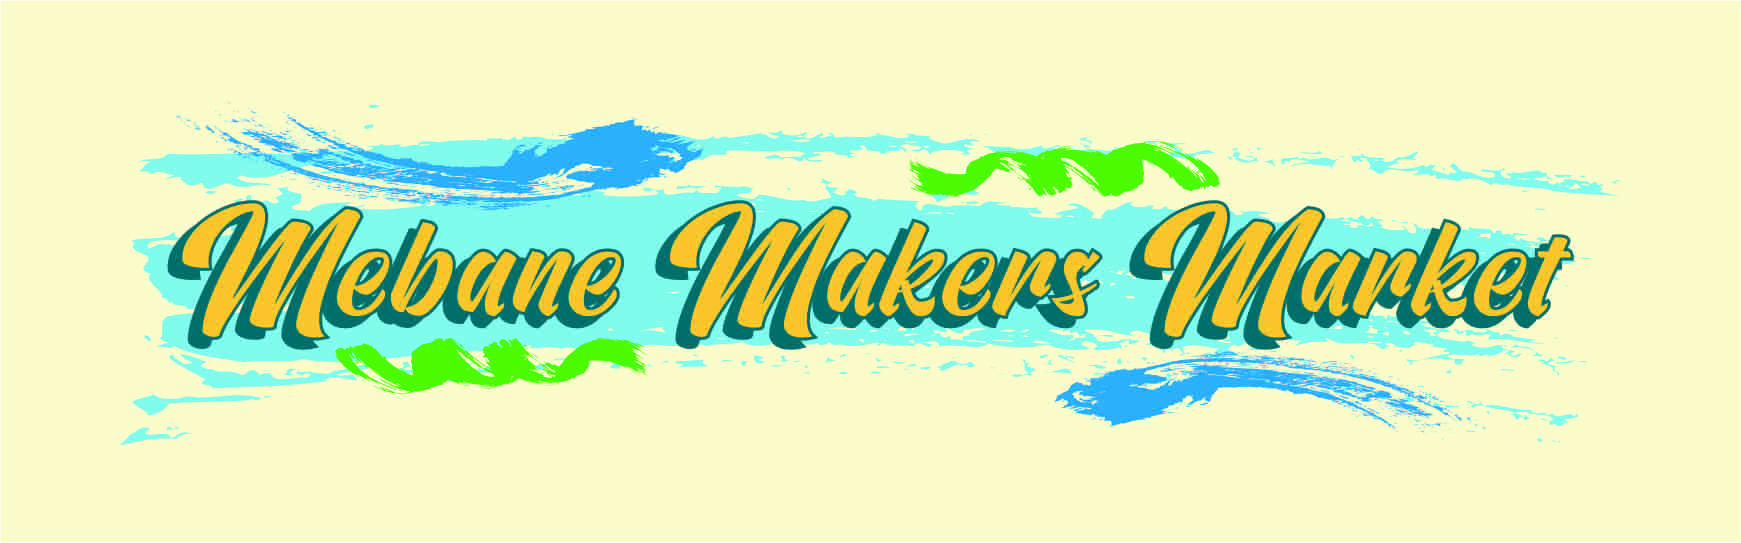 Mebane Maker's Market - August cover image